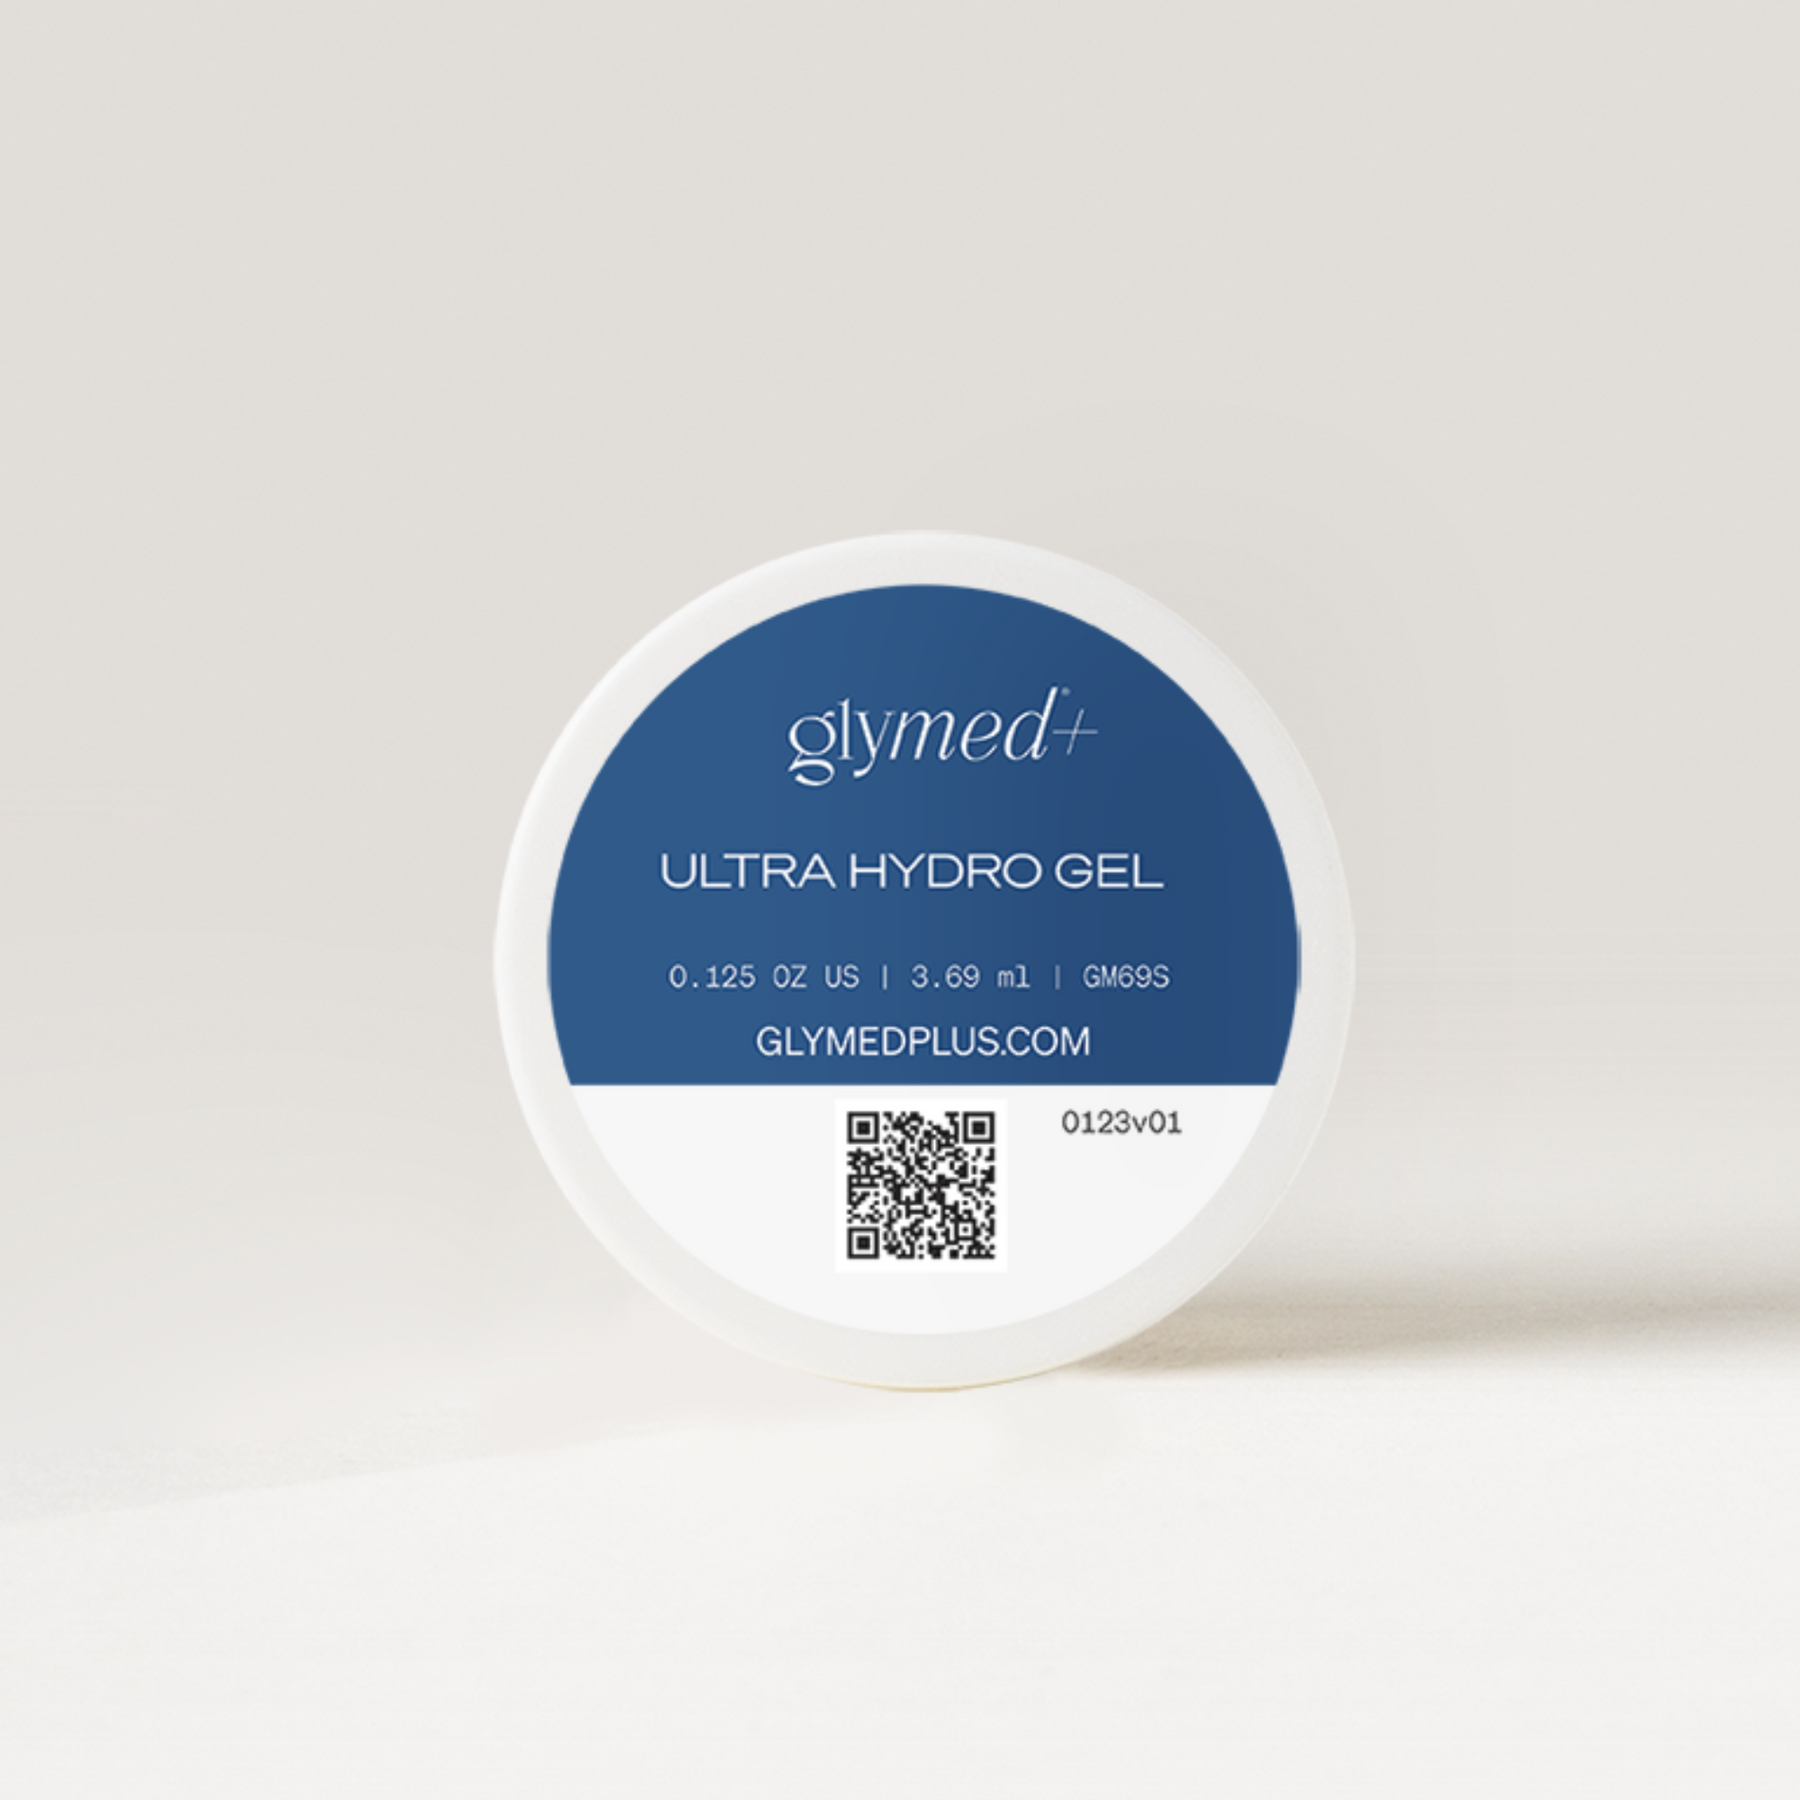 ULTRA HYDRO GEL (Ultra Hydro Gel)